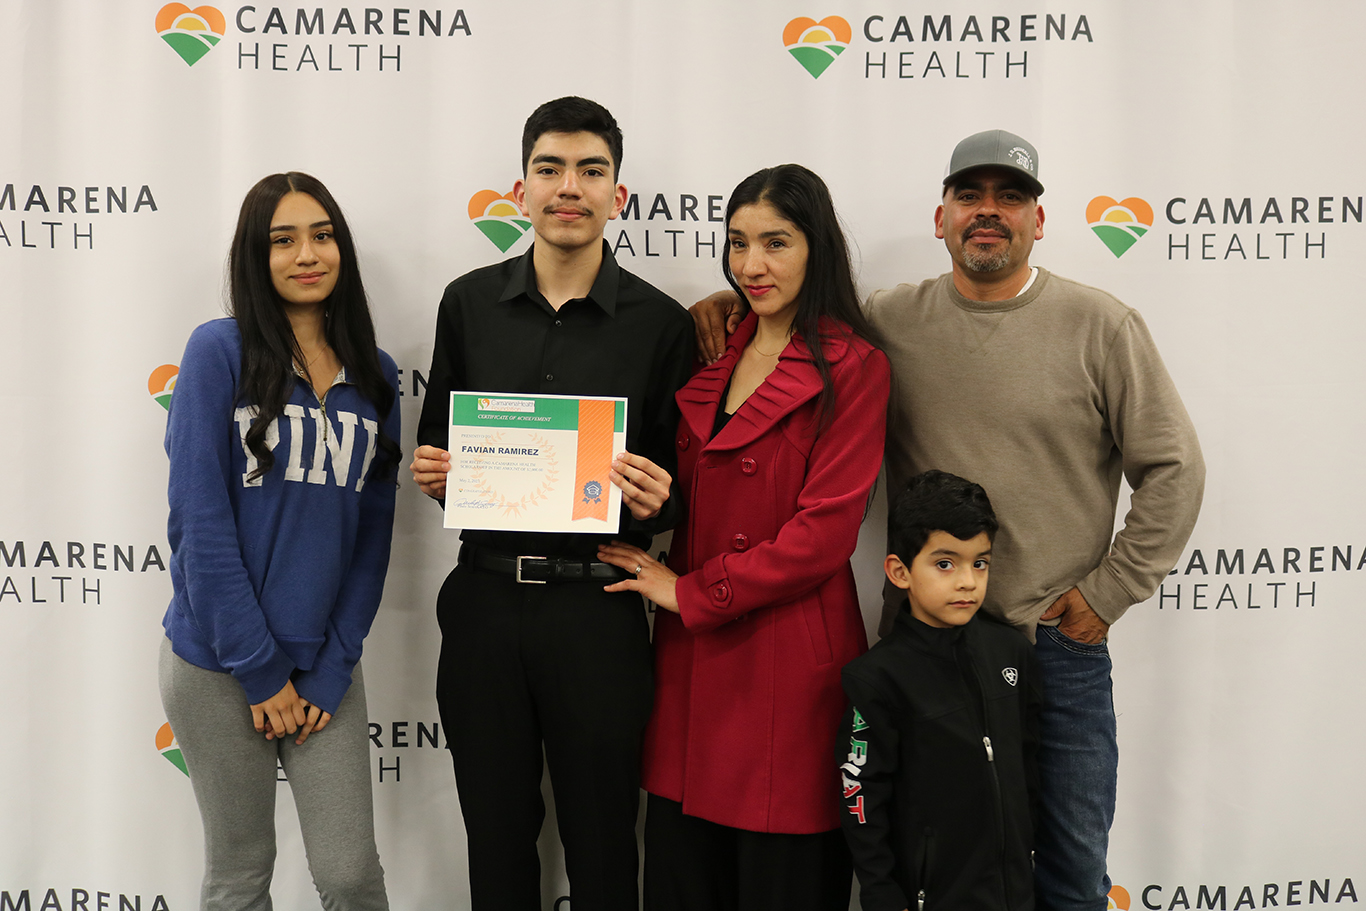 Camarena Health Scholarship Award Recipient Favian Ramirez and Family